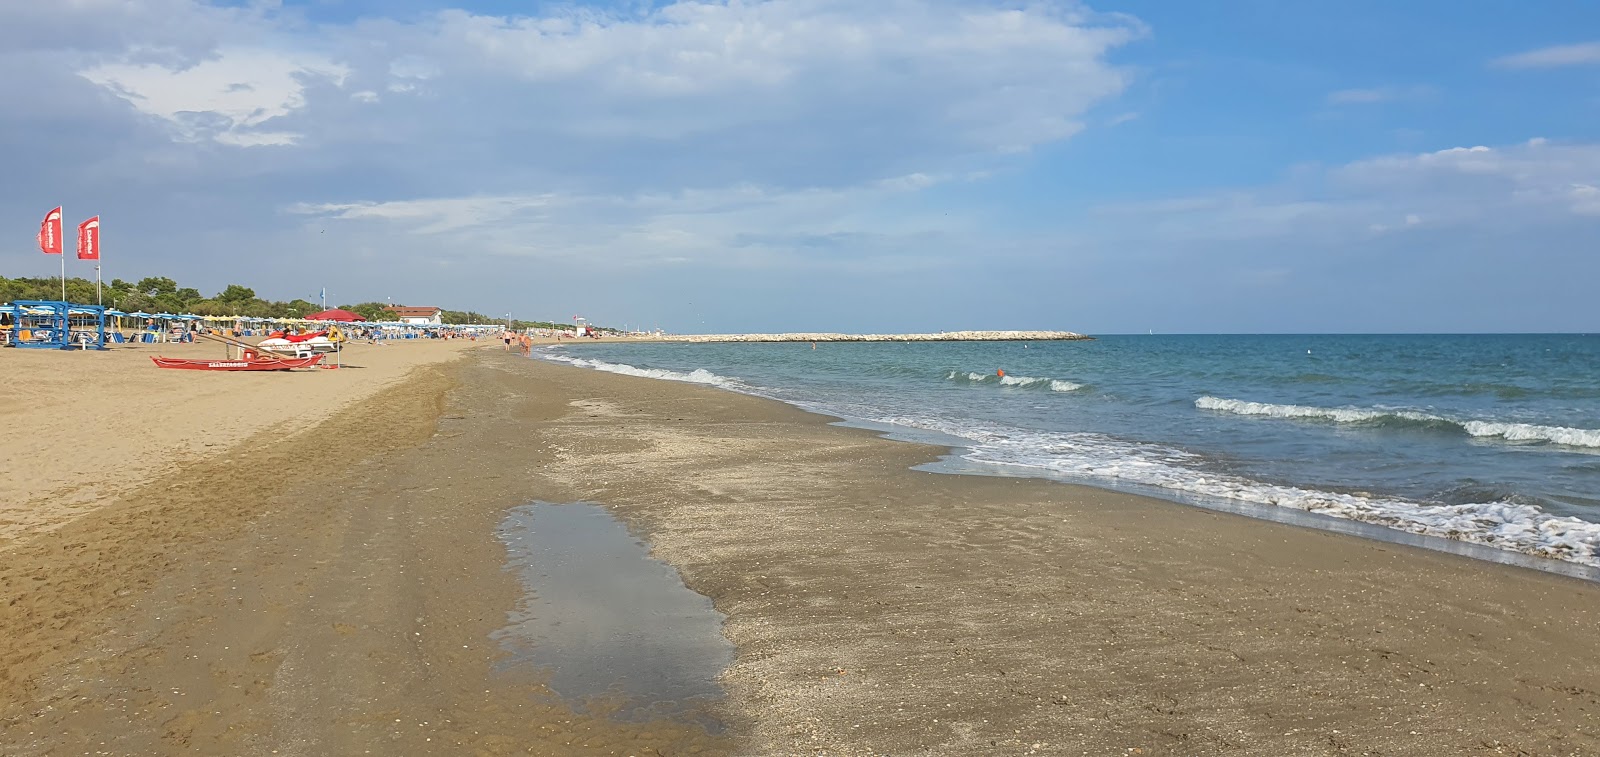 Zdjęcie Spiaggia di Cavallino Treporti z powierzchnią jasny piasek